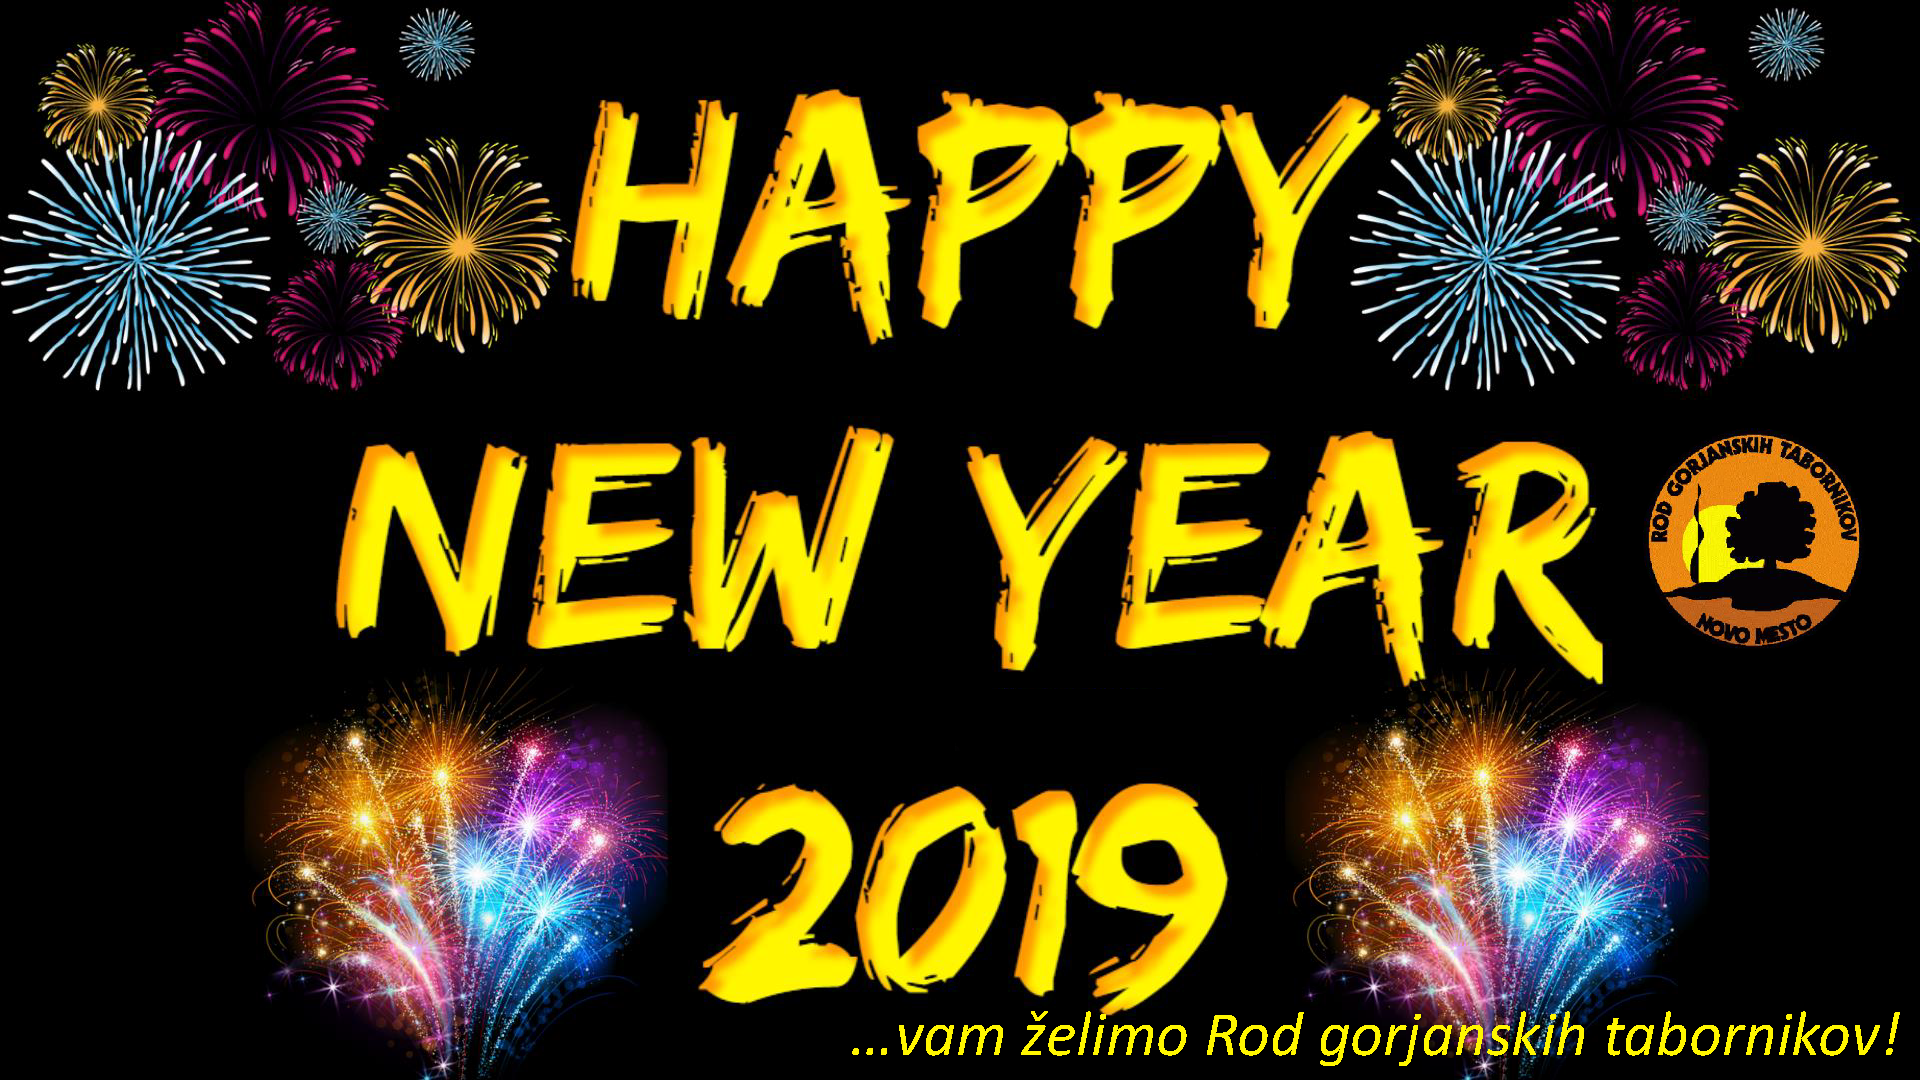 srecno novo leto 2019!